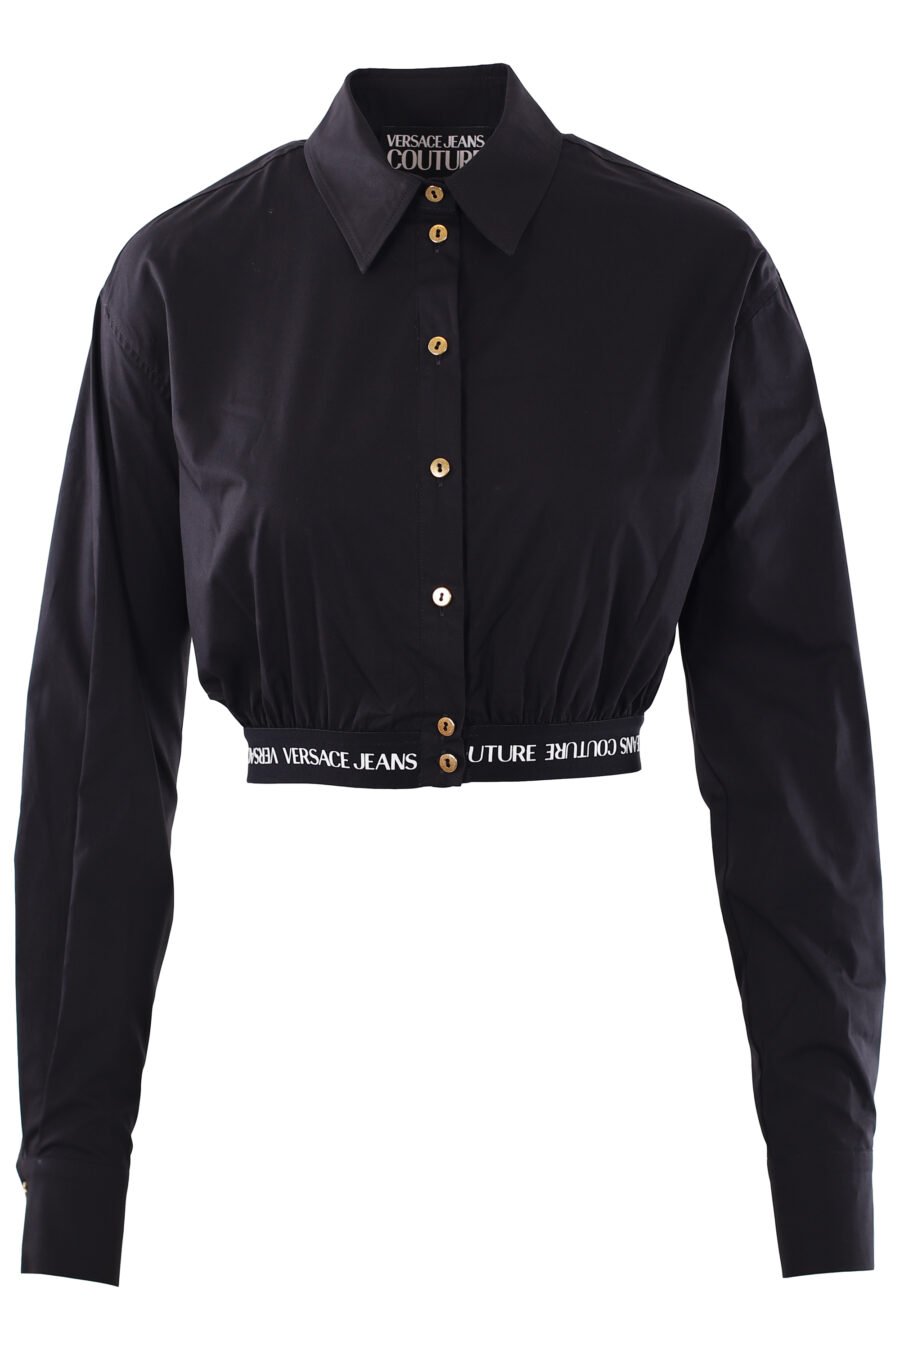 Camisa preta de manga comprida cortada com logótipo de fita - IMG 0277